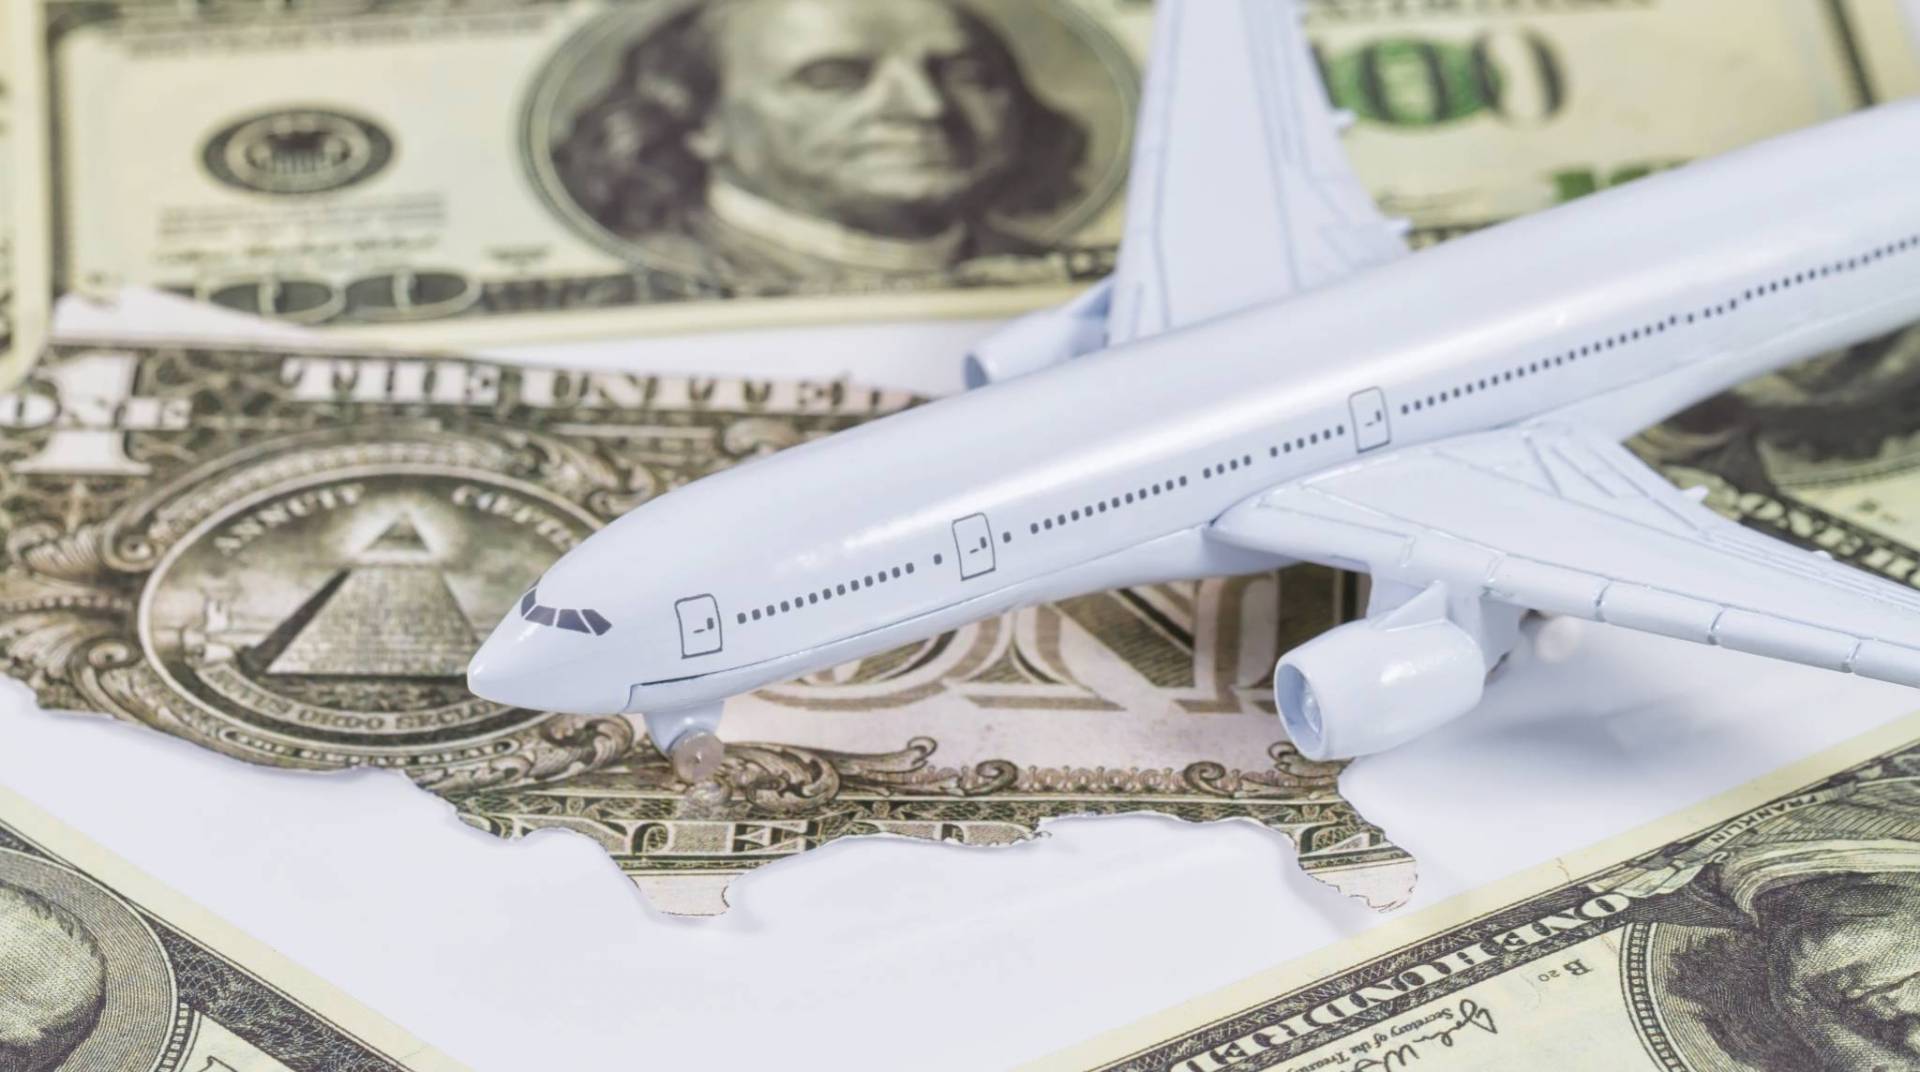  30 مليار دولار.. أرباح متوقعة لشركات الطيران العالمية في 2019 Shutterstock_387731389_602569_highres